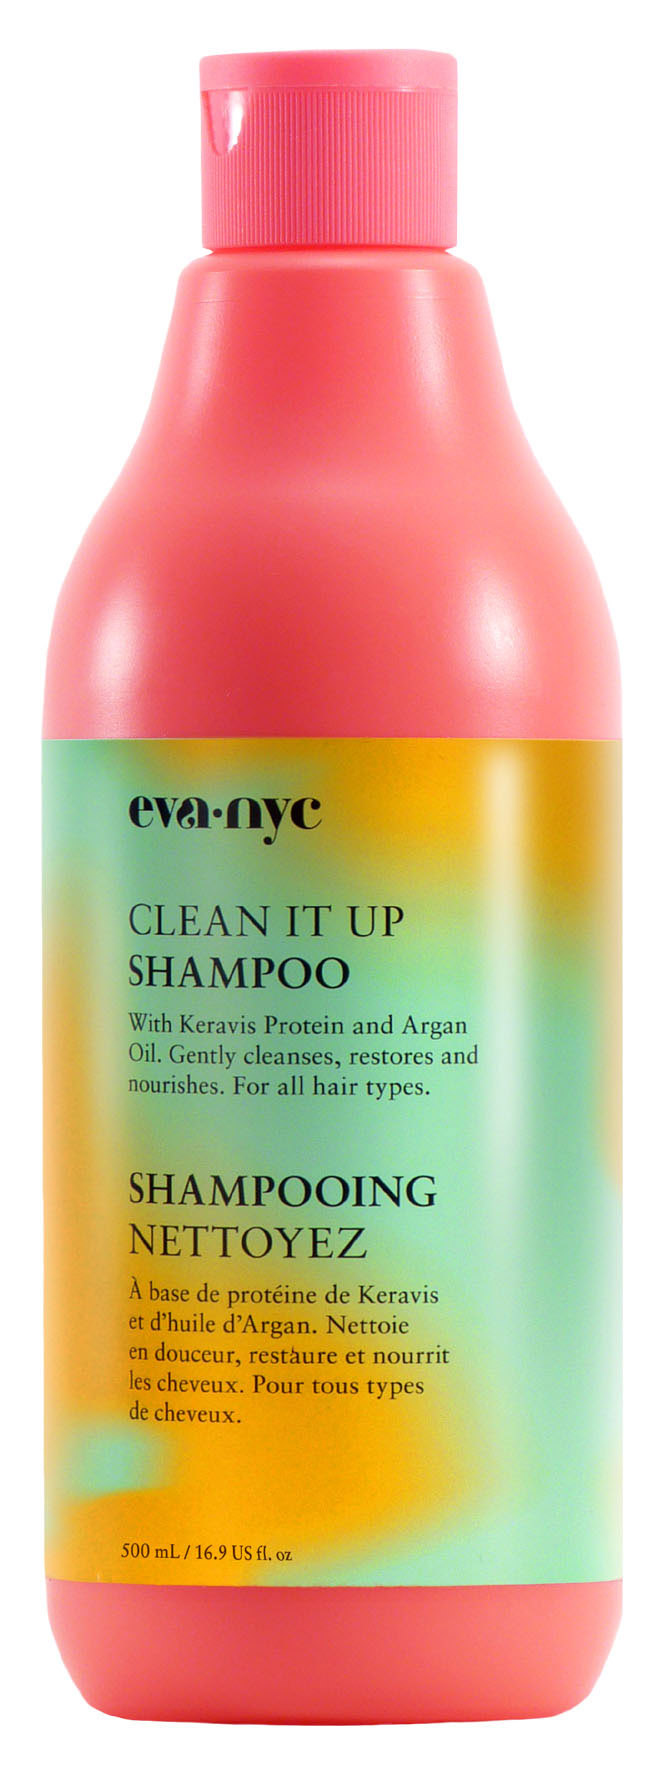 Confira 5 mitos sobre o shampoo